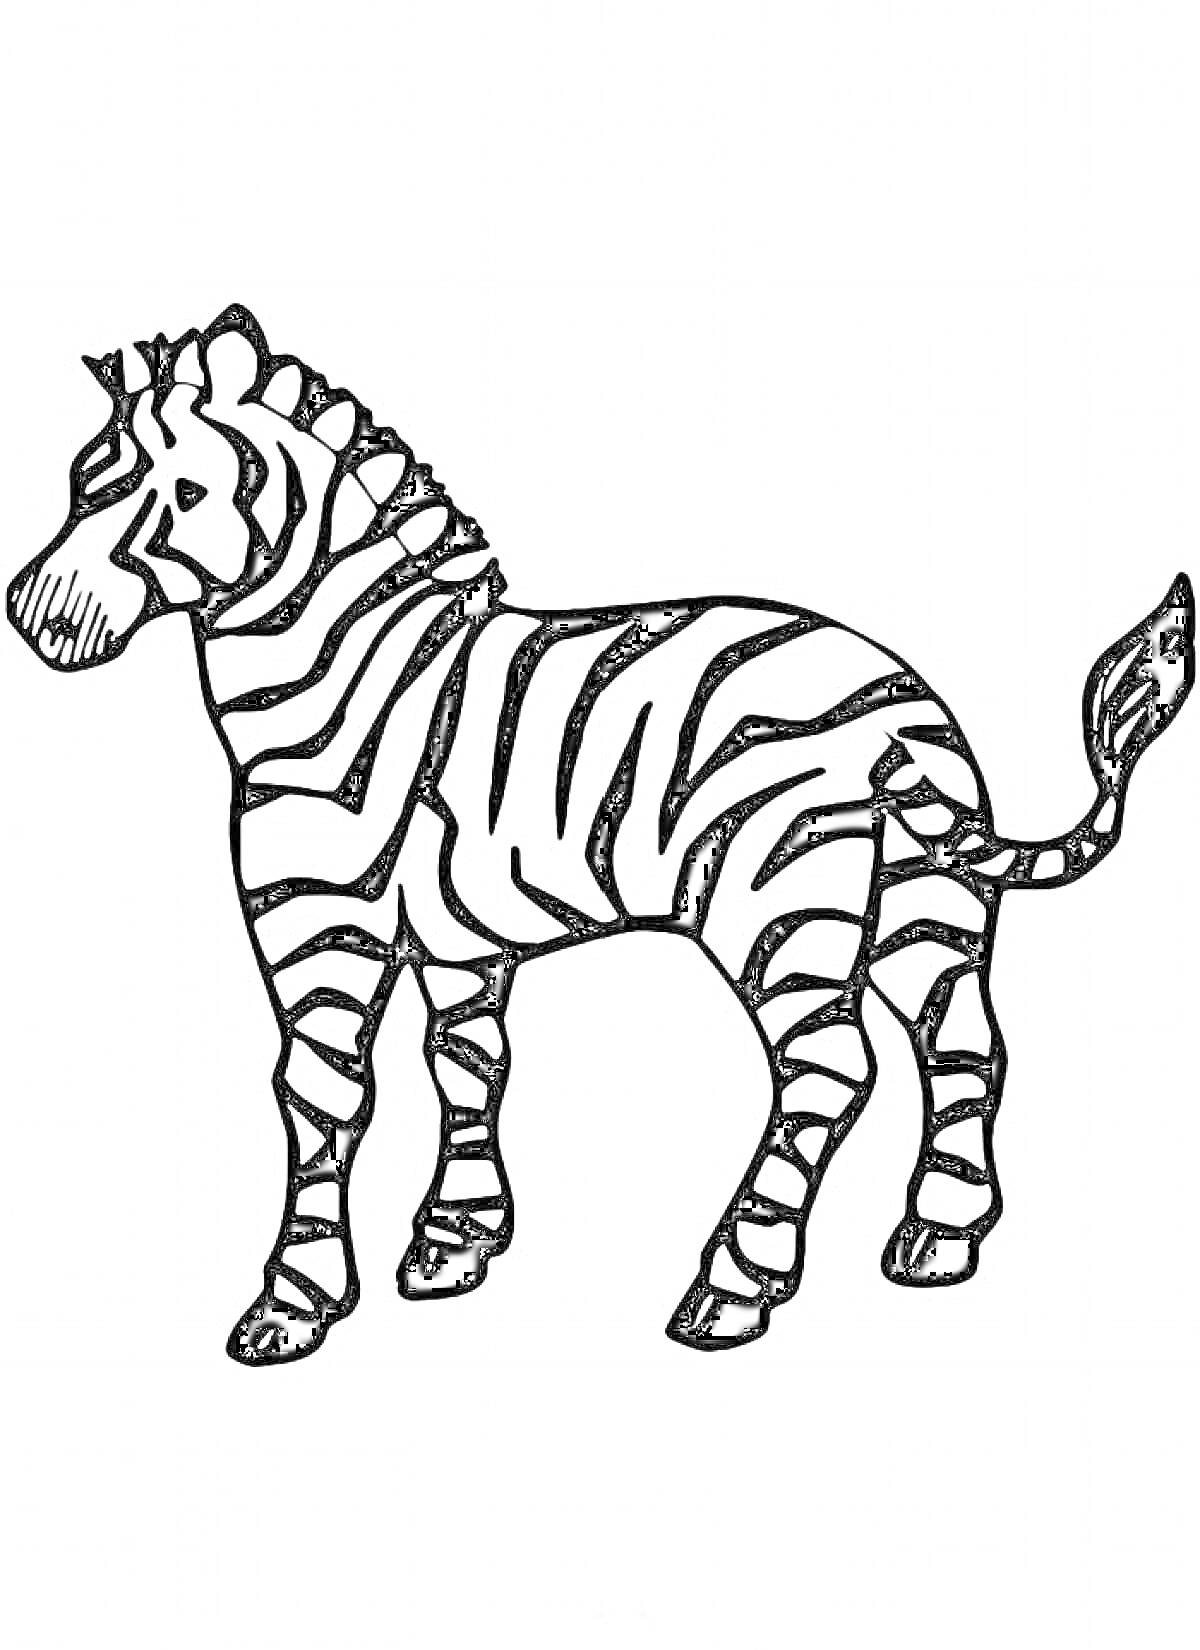 Зебра стоящая в профиль с полосатым рисунком на теле и поднятым хвостом